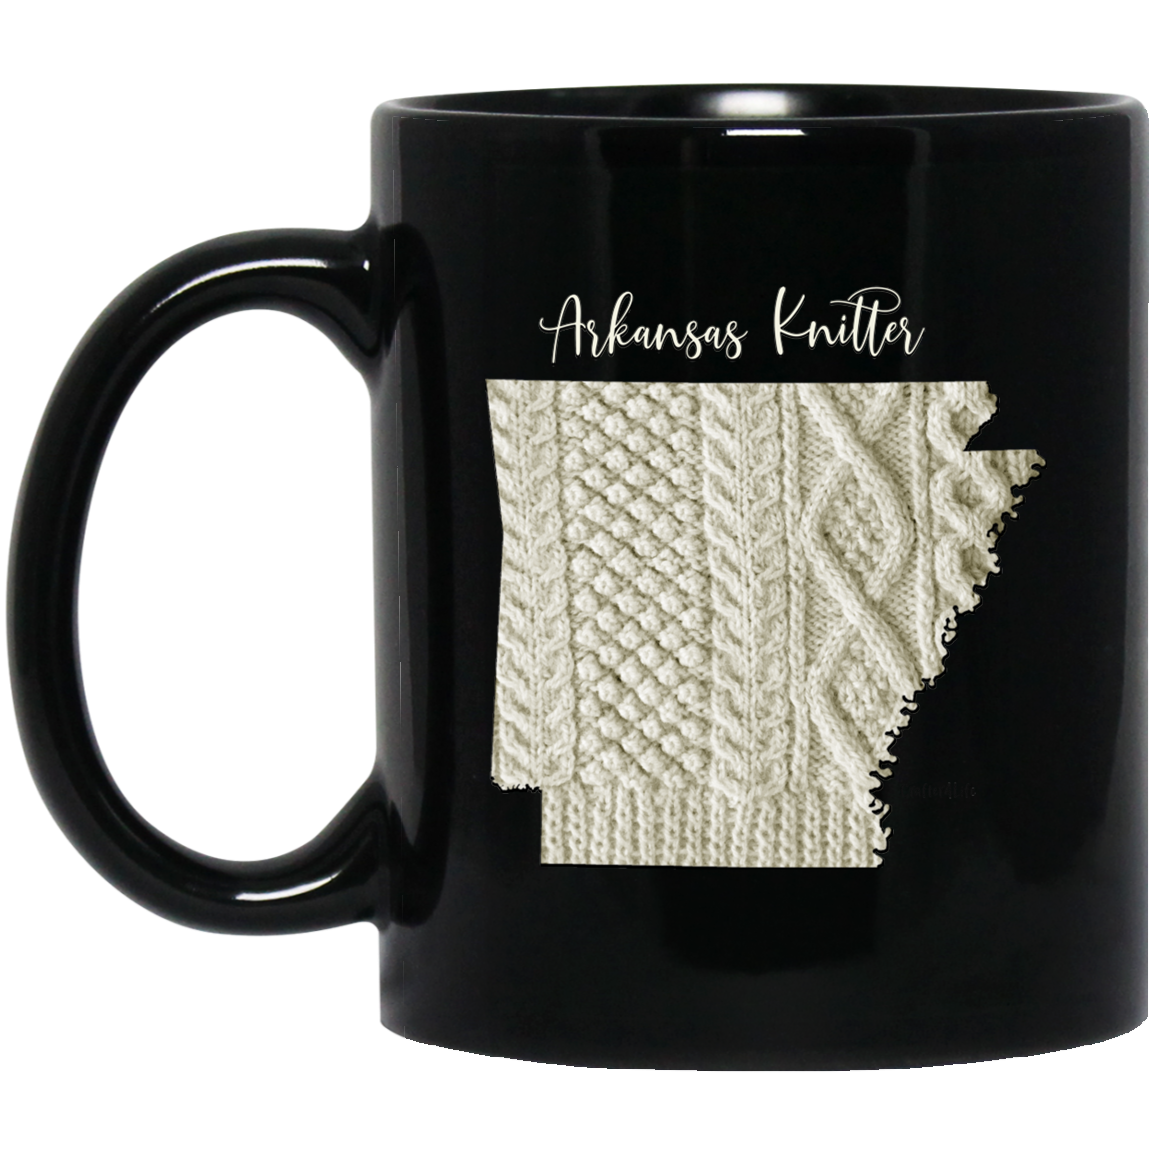 Arkansas Knitter Mugs